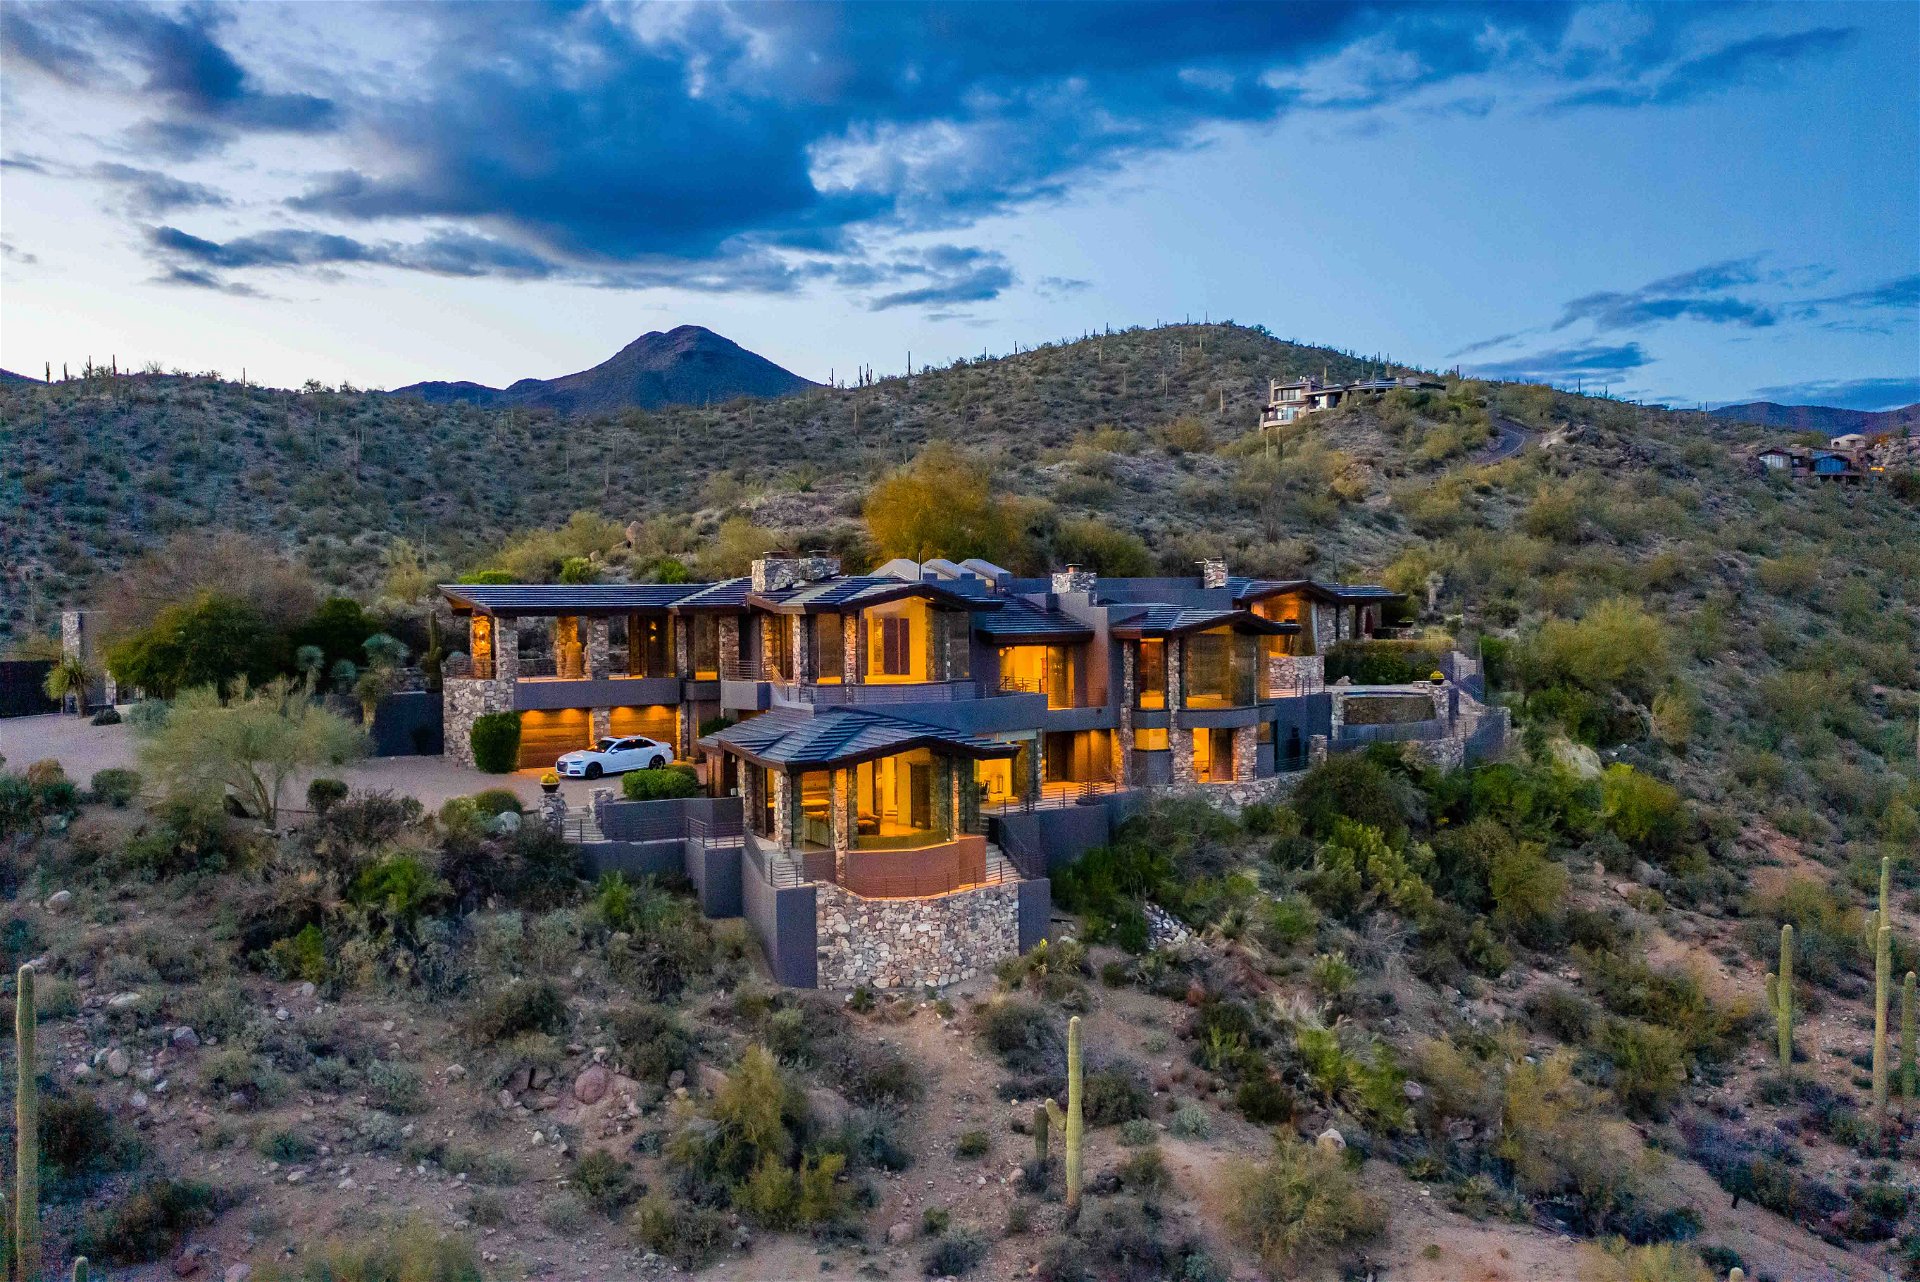 Der US-Schauspieler, Produzent und Drehbuchautor Steven Seagal, 71, zählte in Hollywood zu den bedeutendsten Actionstars seiner Zeit. Vor Kurzem erst hat er seine imposante Villa mit 830 Quadratmetern Wohnfläche auf einem Zwölf-Hektar-Anwesen im Norden der Wüstenstadt Scottsdale in Arizona verkauft. 